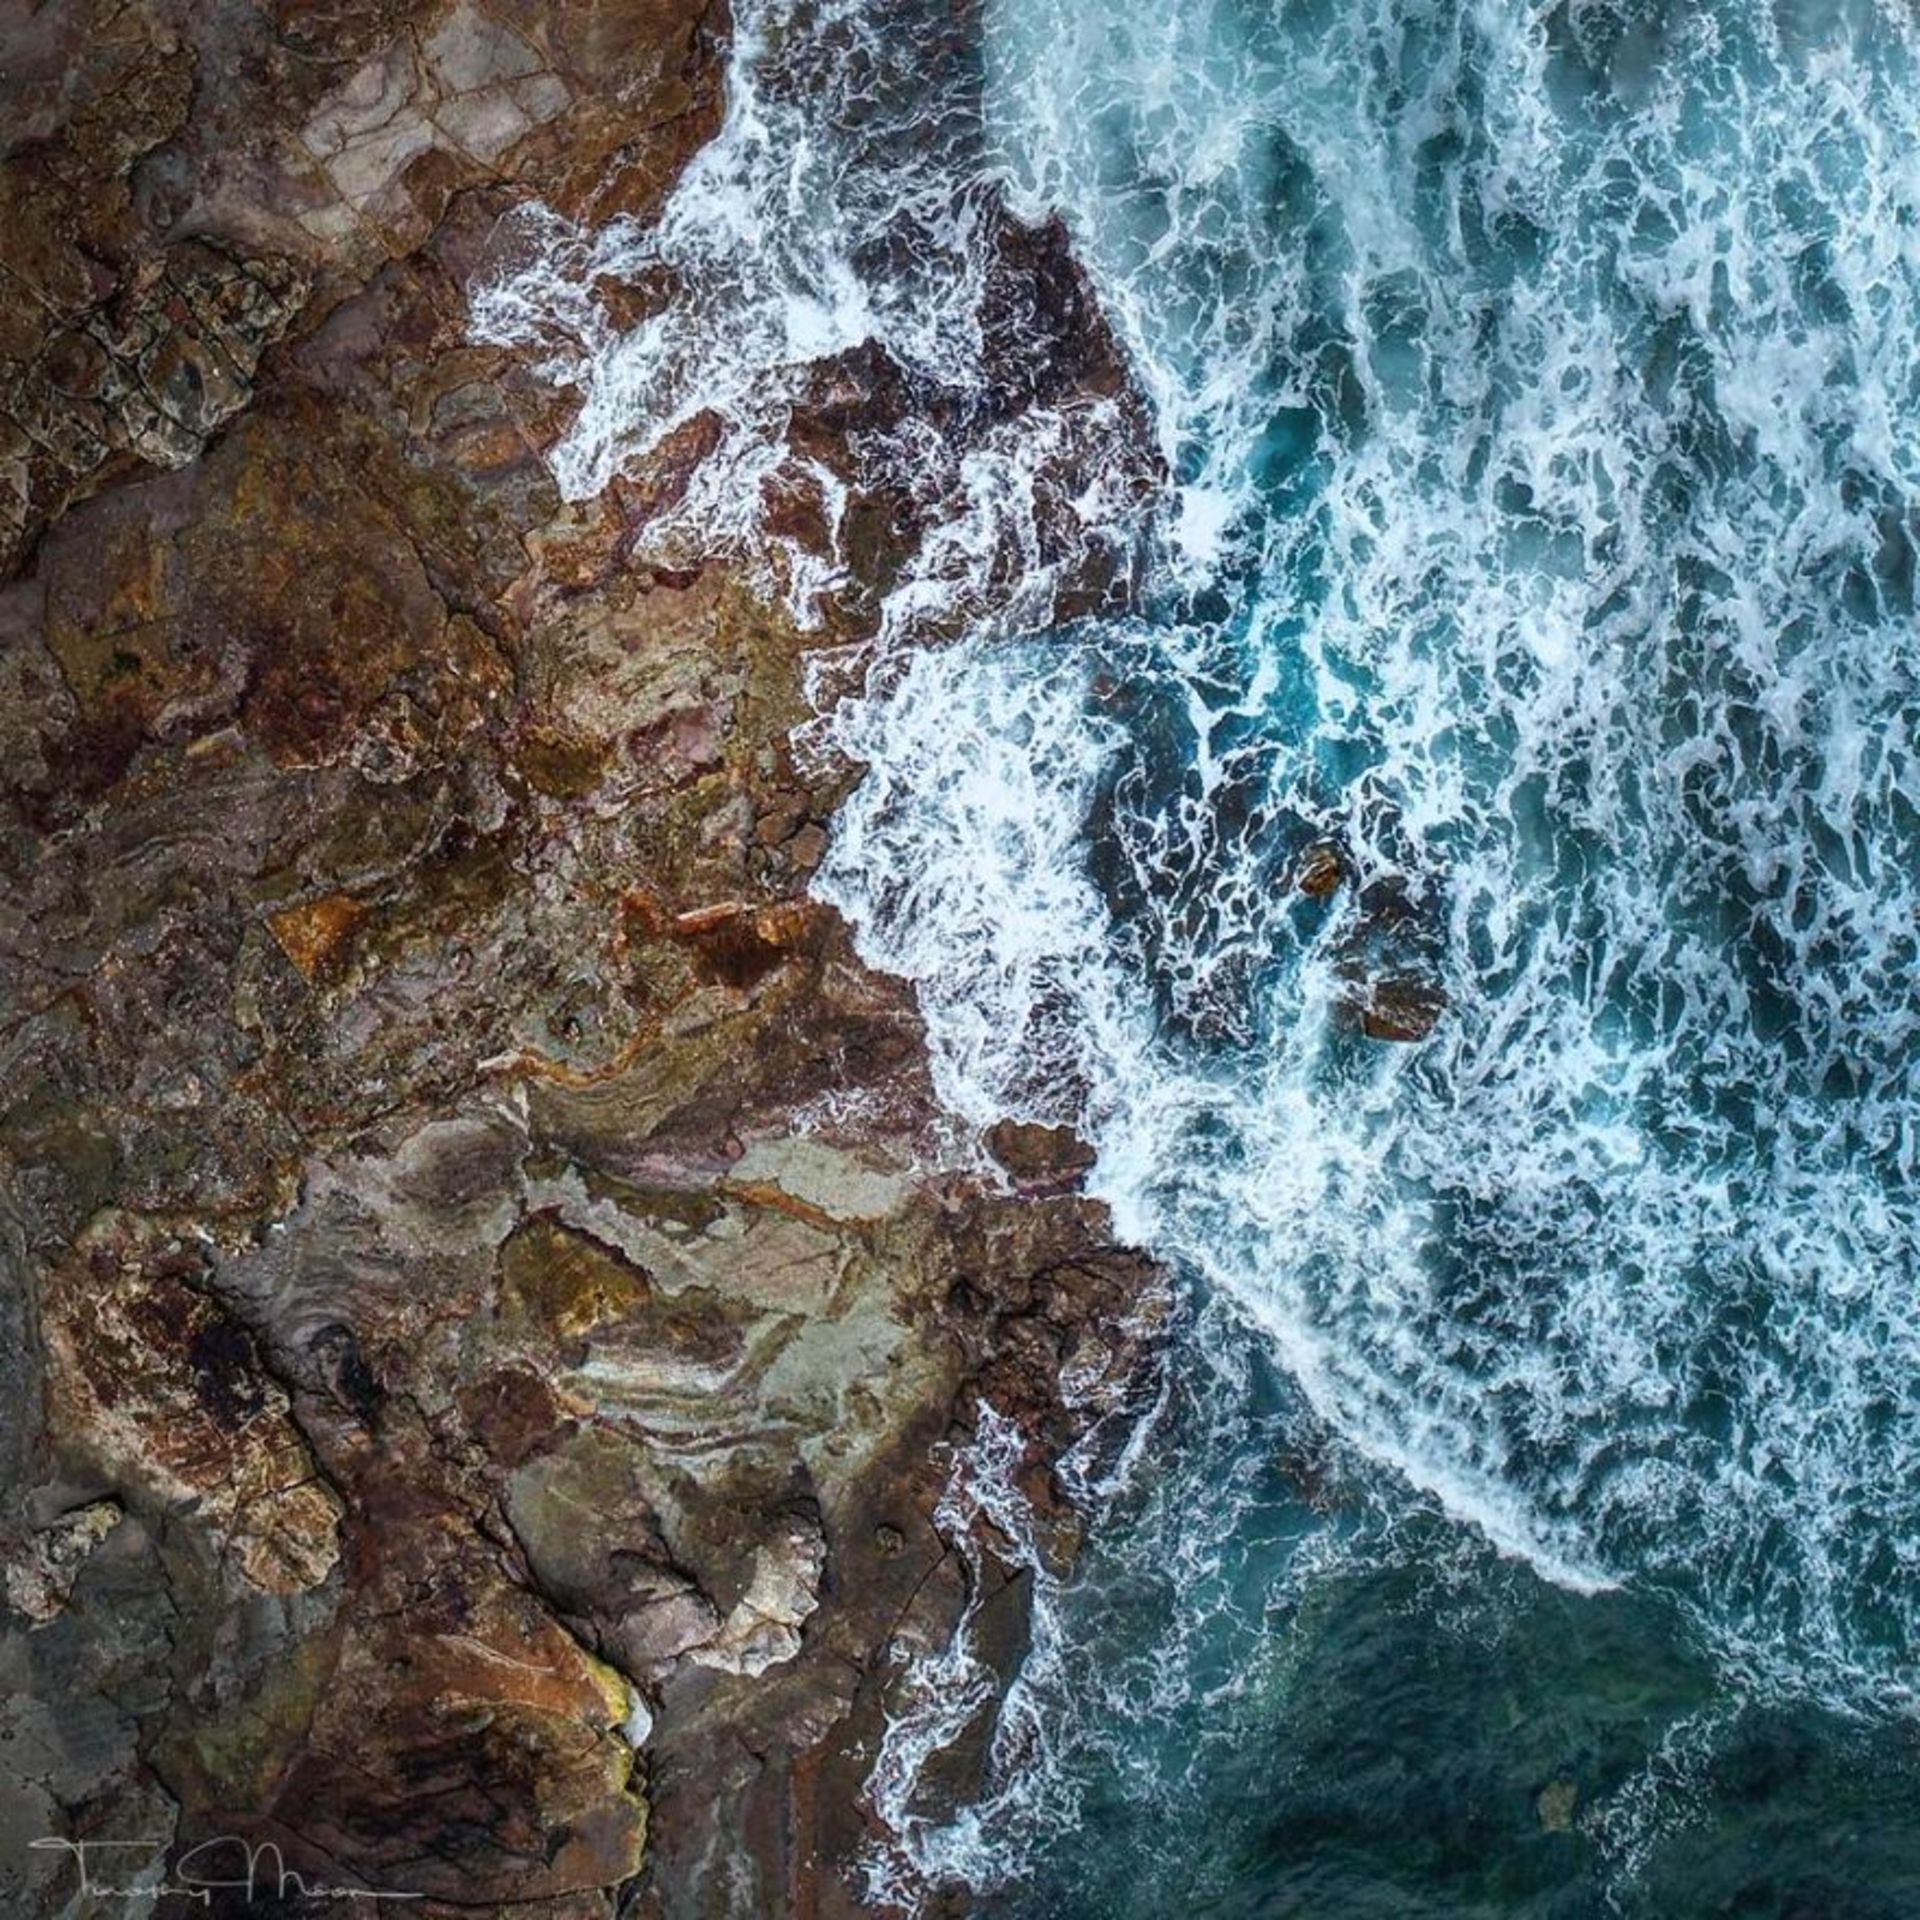 عکاسی آبستره هوایی از خط ساحلی/ تیموتی مون